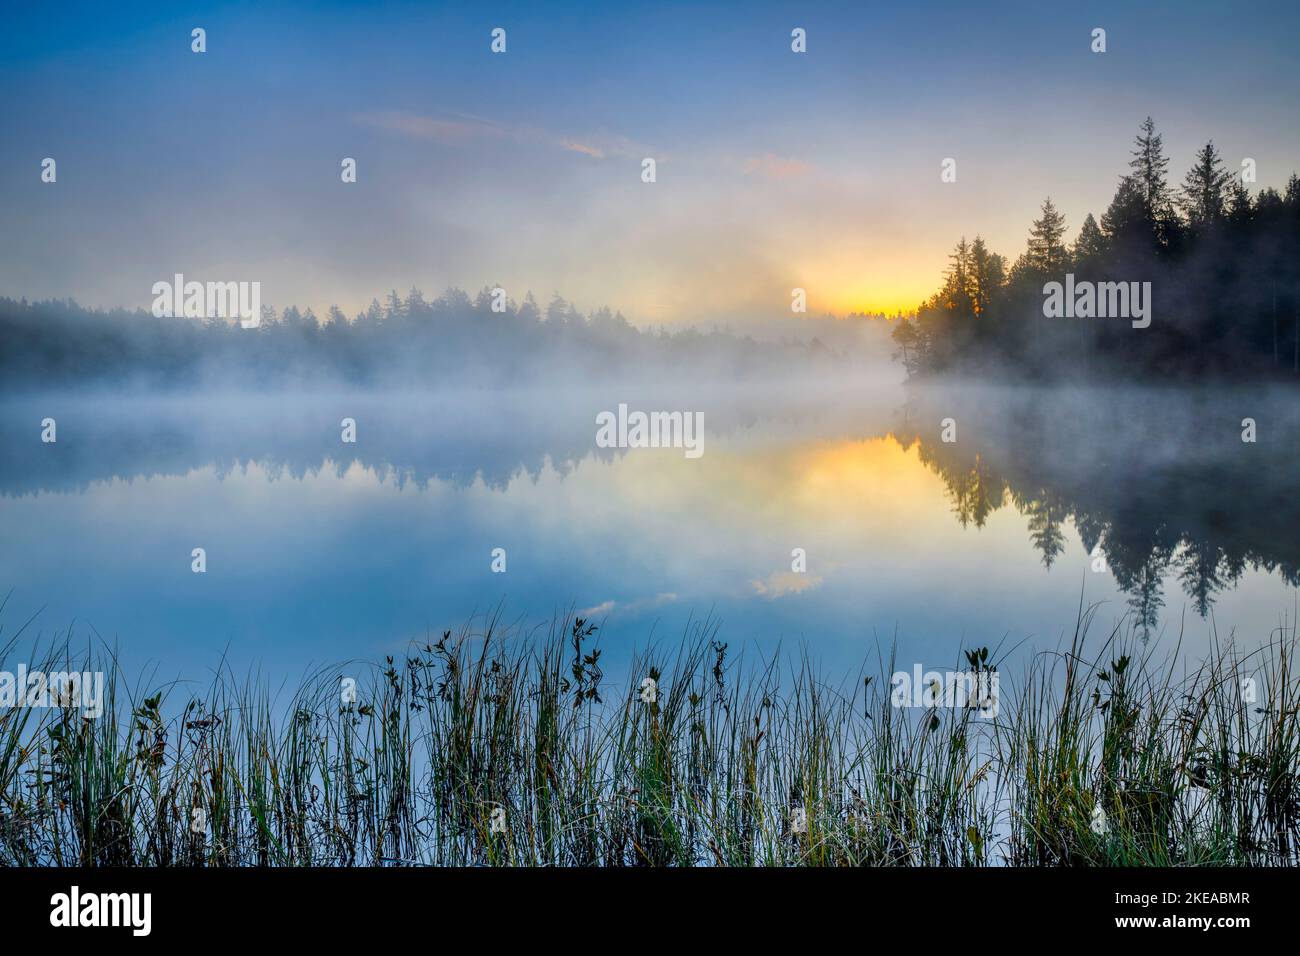 Stimmungsvolle Morgendämmerung mit Nebelschwaden über dem spiegelglatten Moorsee Étang de la Gruère im Kanton Jura, Schweiz Stock Photo